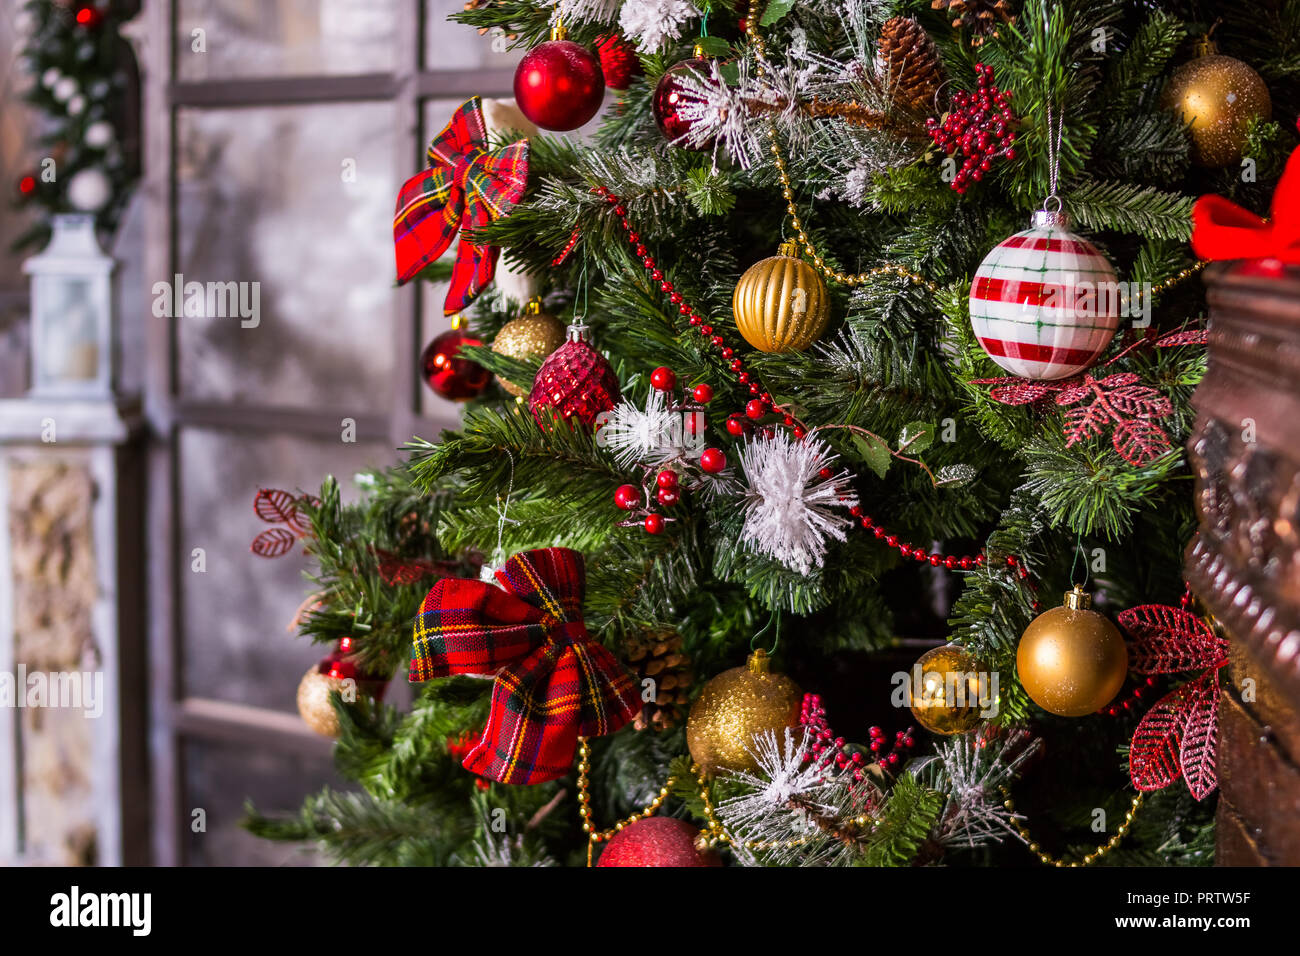 Frohe Weihnachten und schöne Feiertage. Ein schönes Wohnzimmer für  Weihnachten dekoriert. Die festlich geschmückten Home Interior mit  Weihnachtsbaum. schöne Ornamente und weißen funkelnden Lichtern  Stockfotografie - Alamy